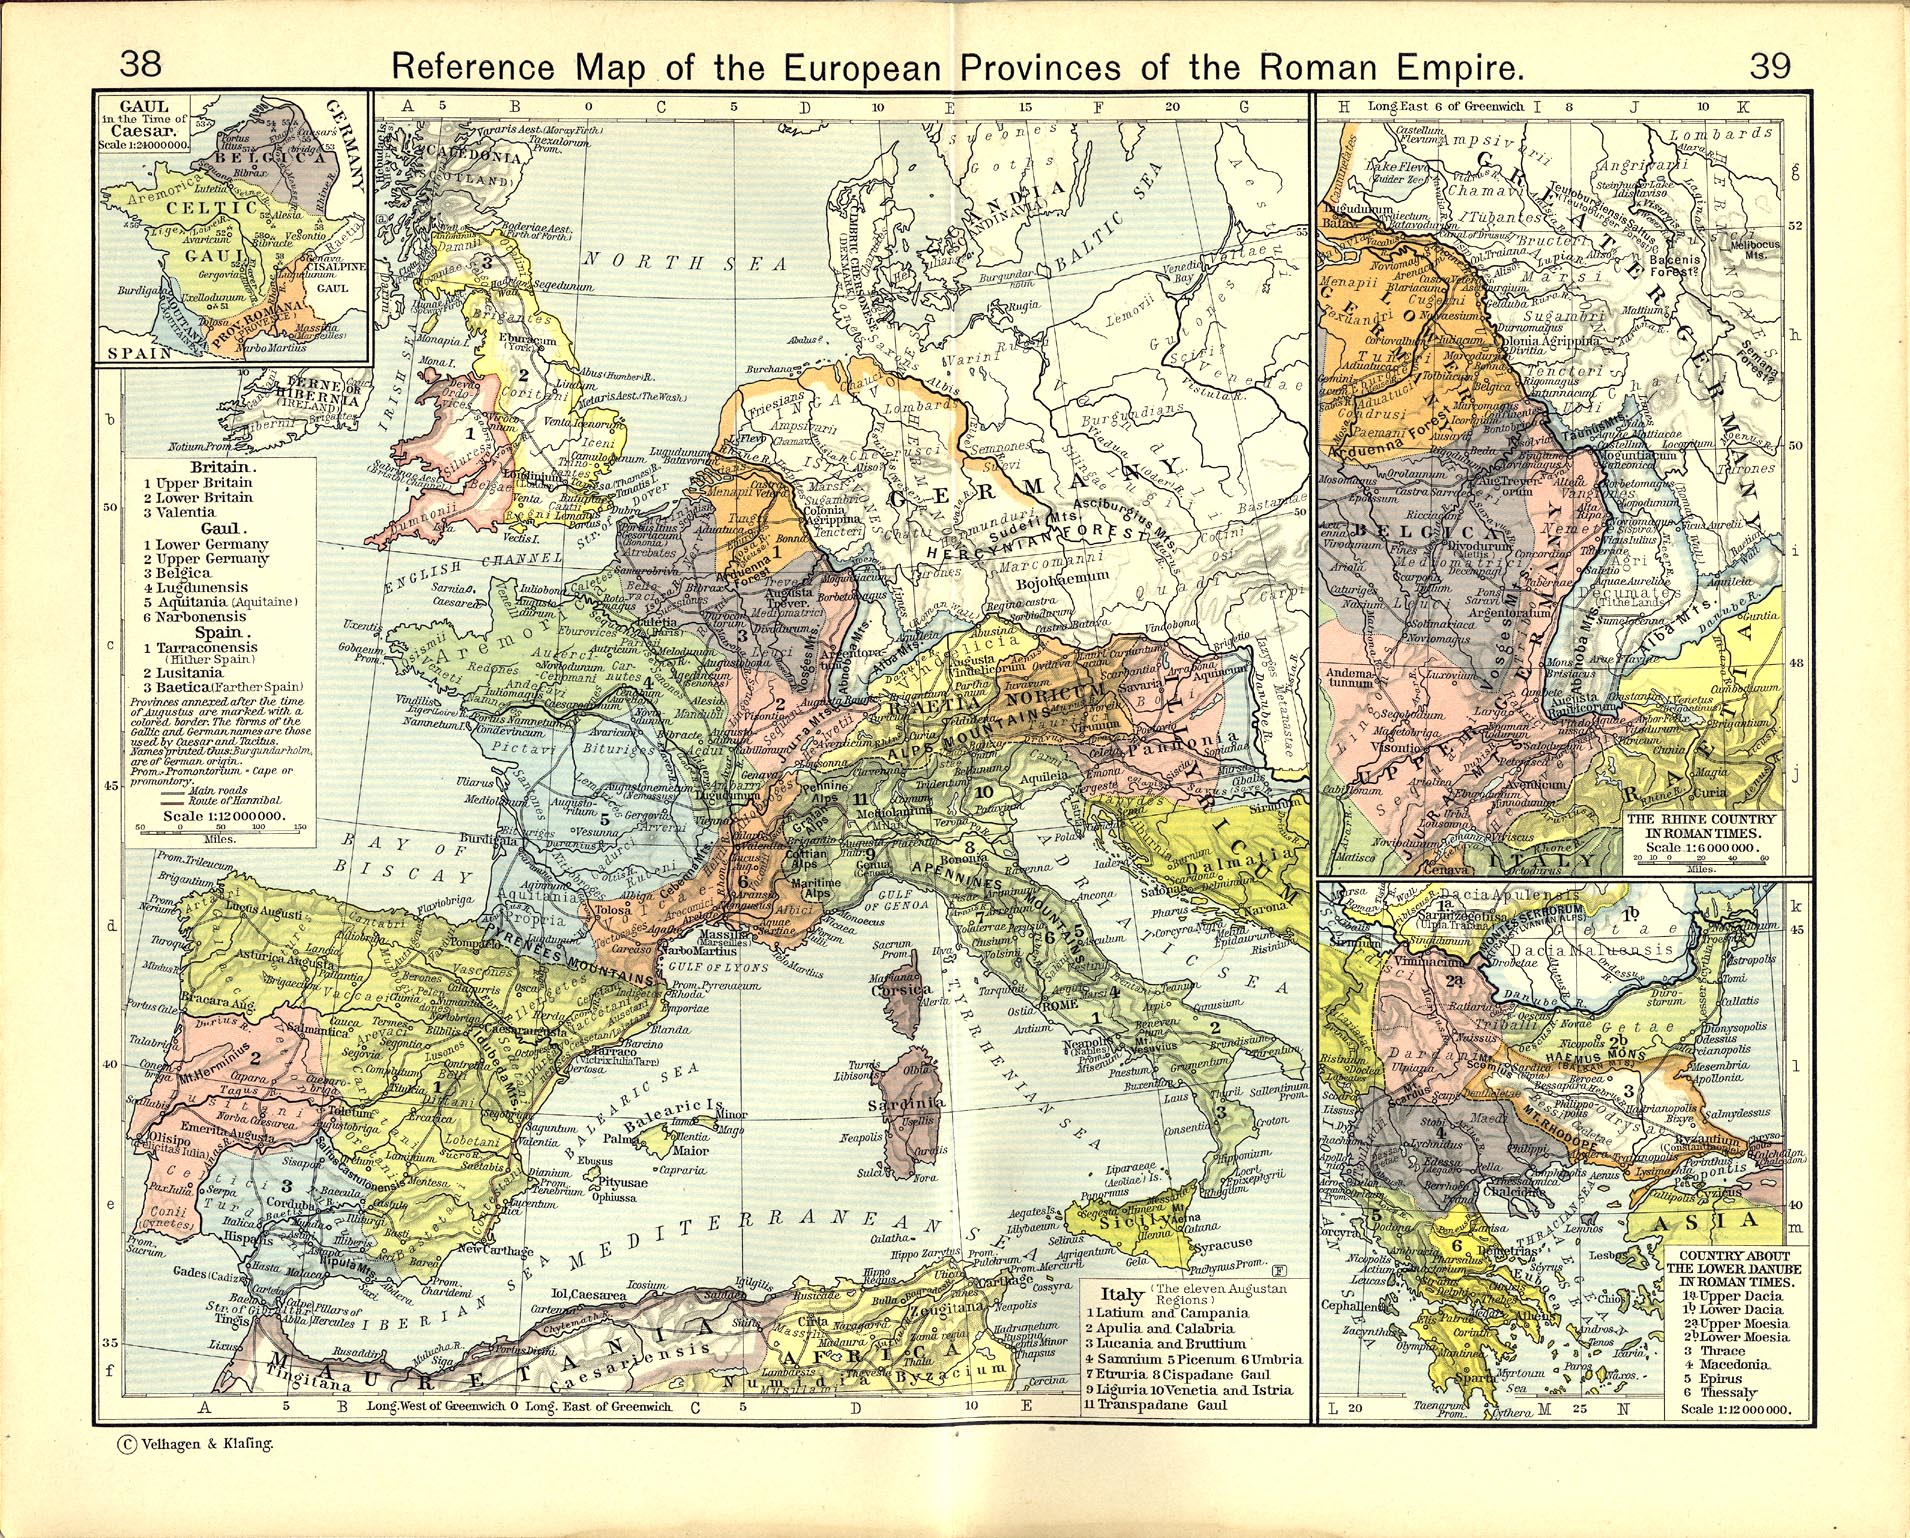 Provincias Europeas del Imperio Románo